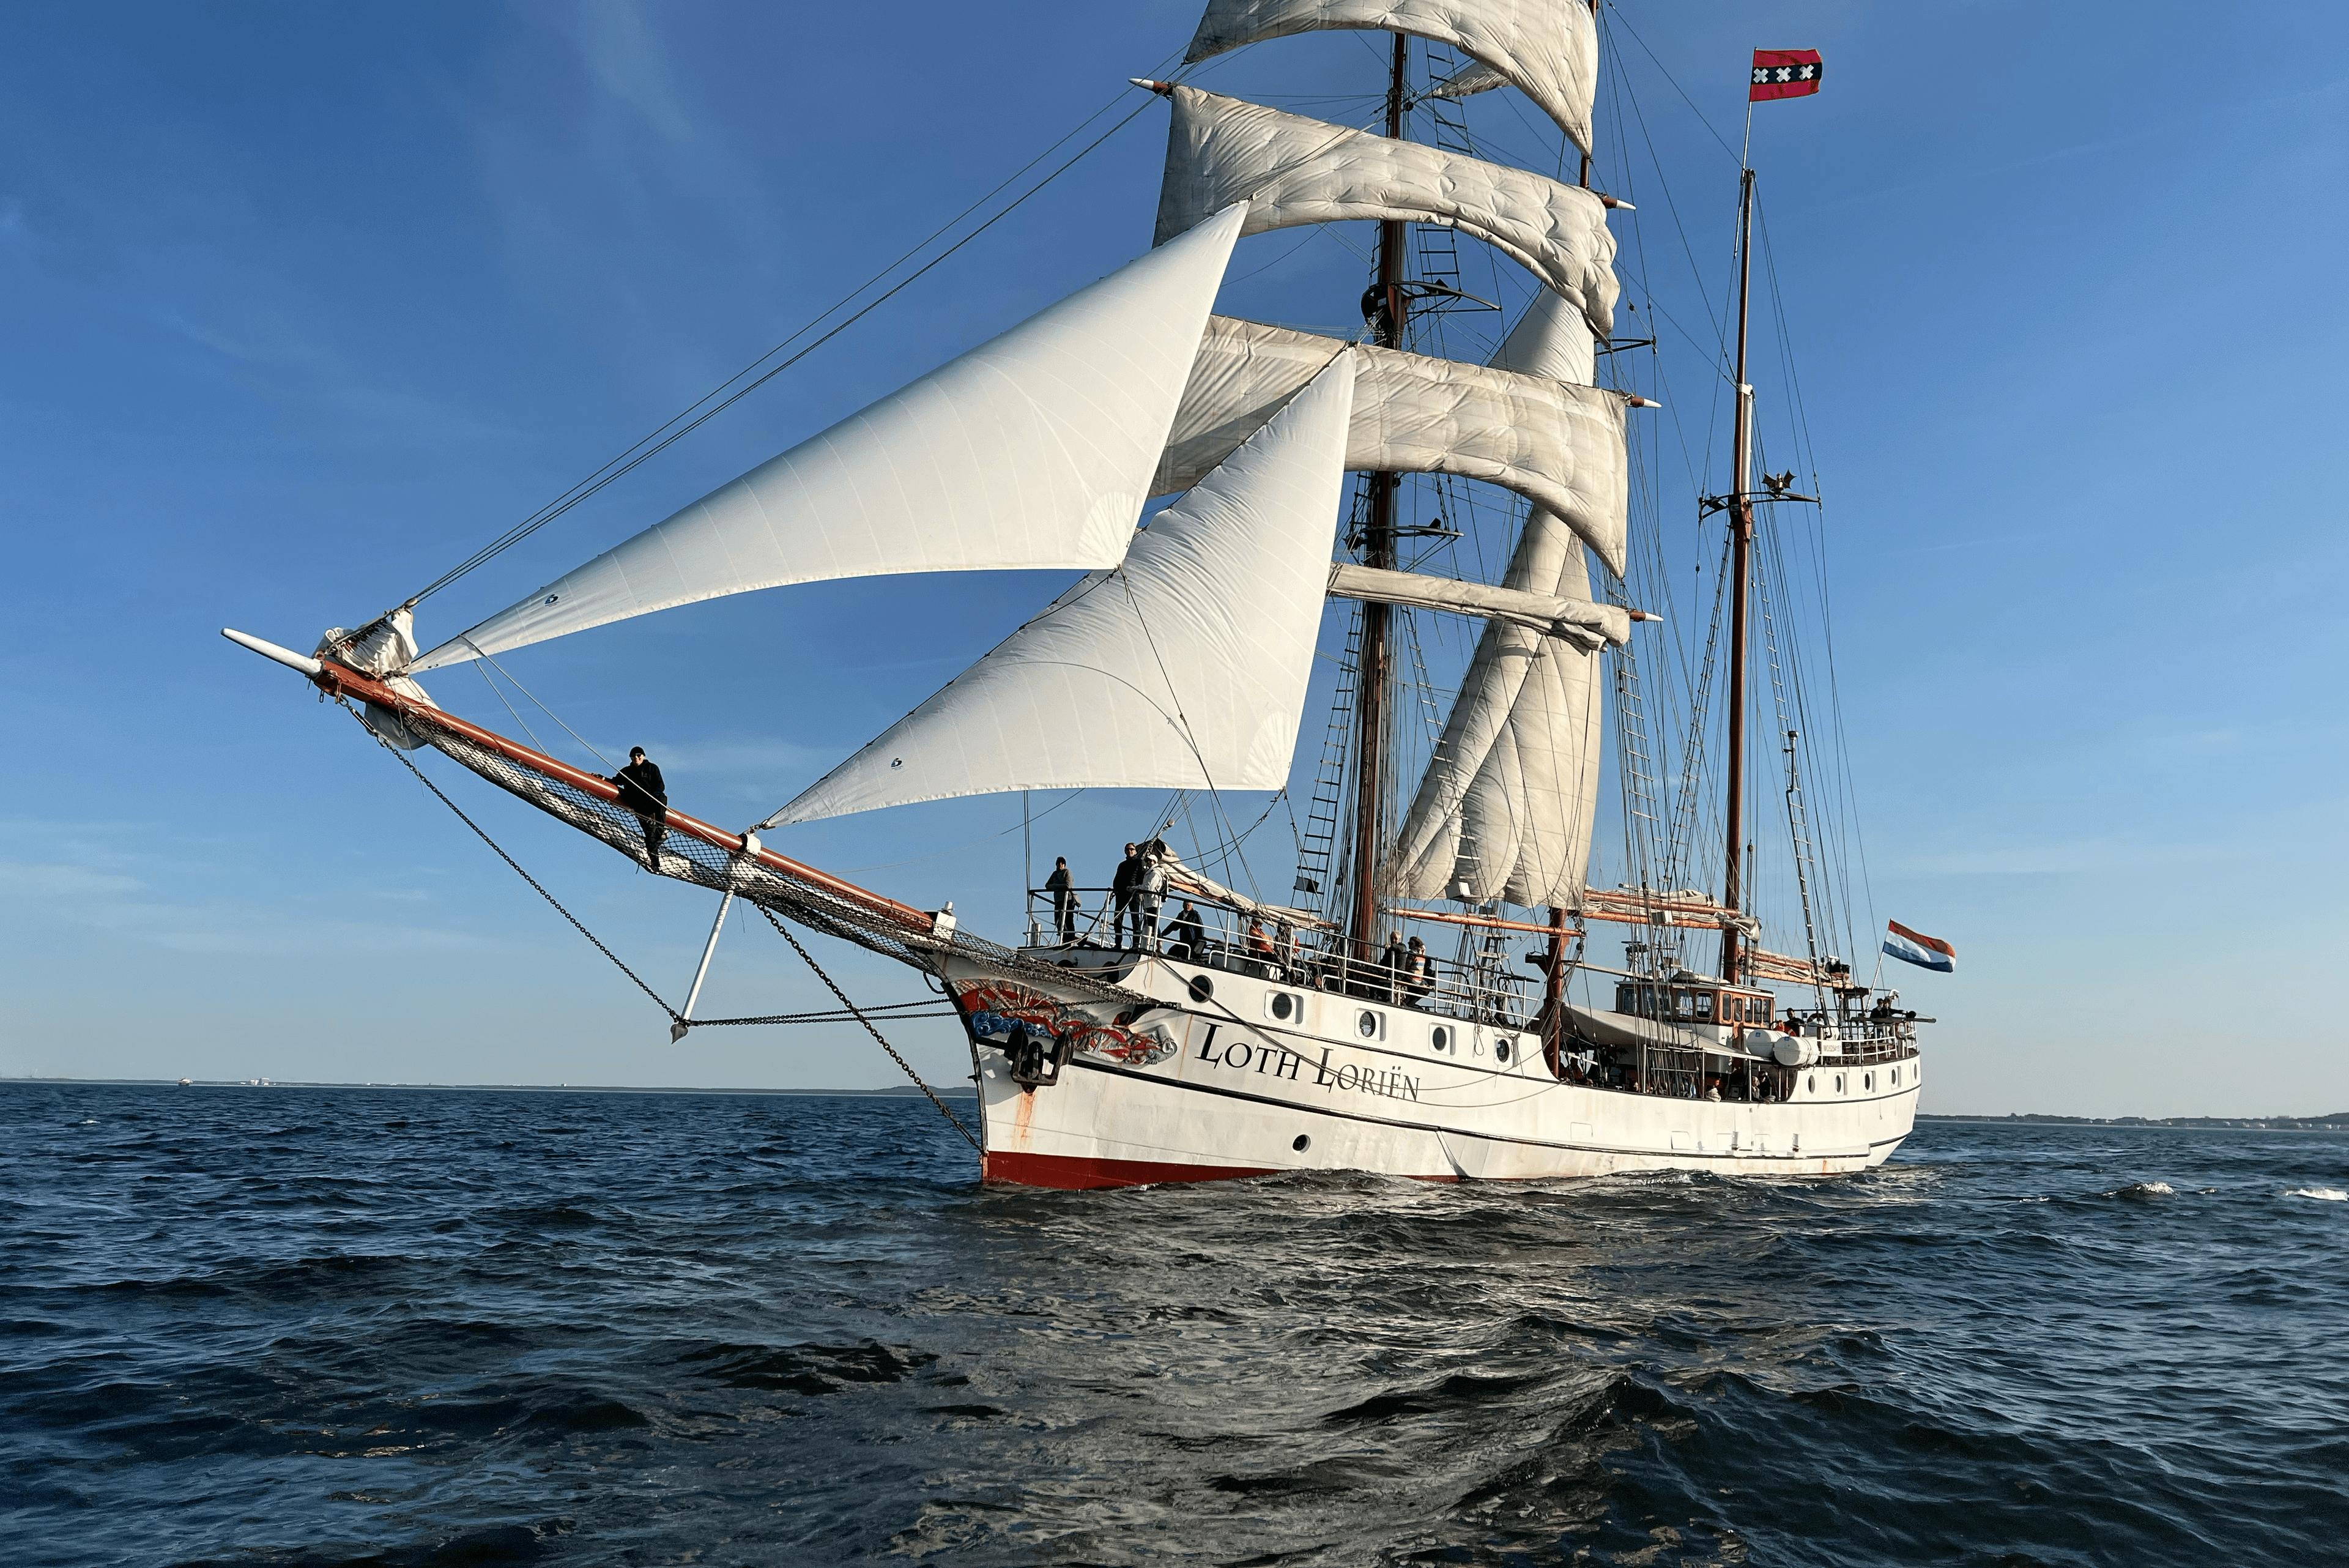 Segelschiff Loth Lorien mit geblähten Segeln auf der Ostsee